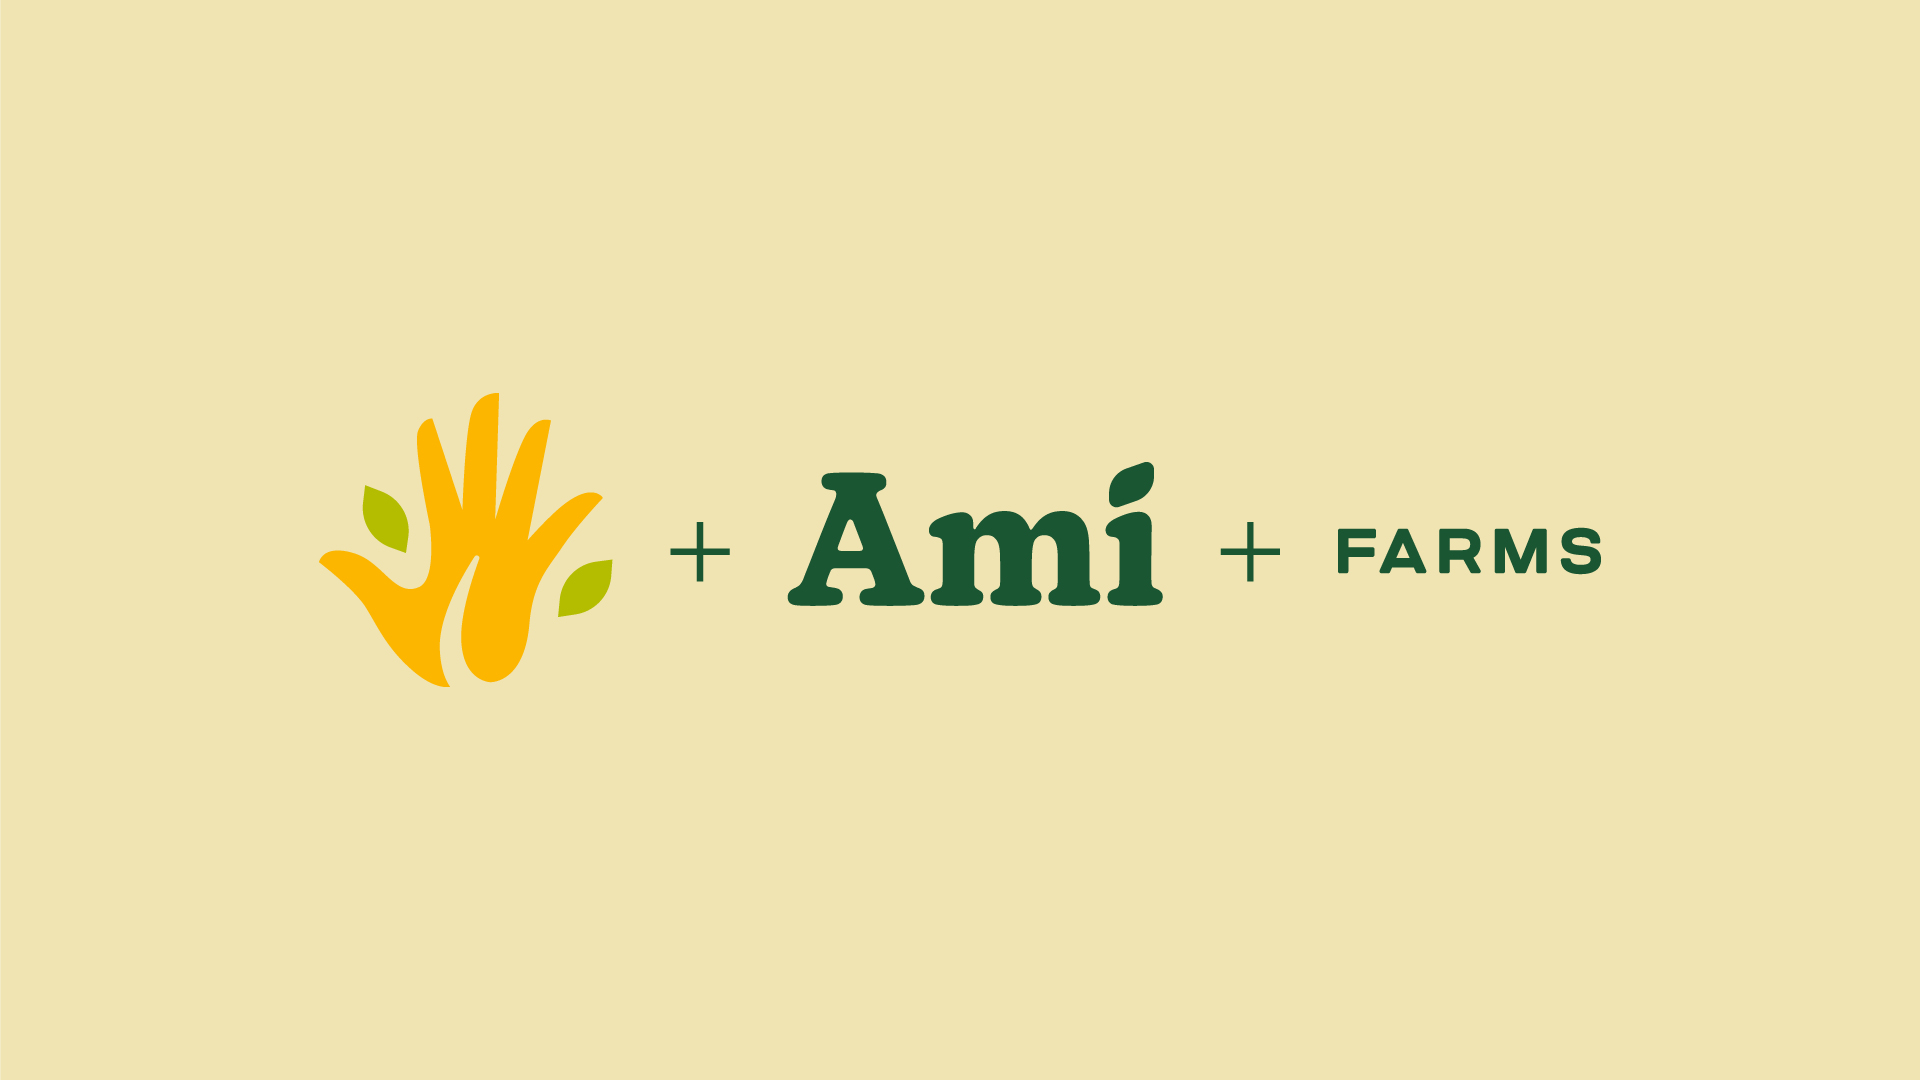 Logo icon and logo type break down for bidynamic farm and brand Ami Farms 